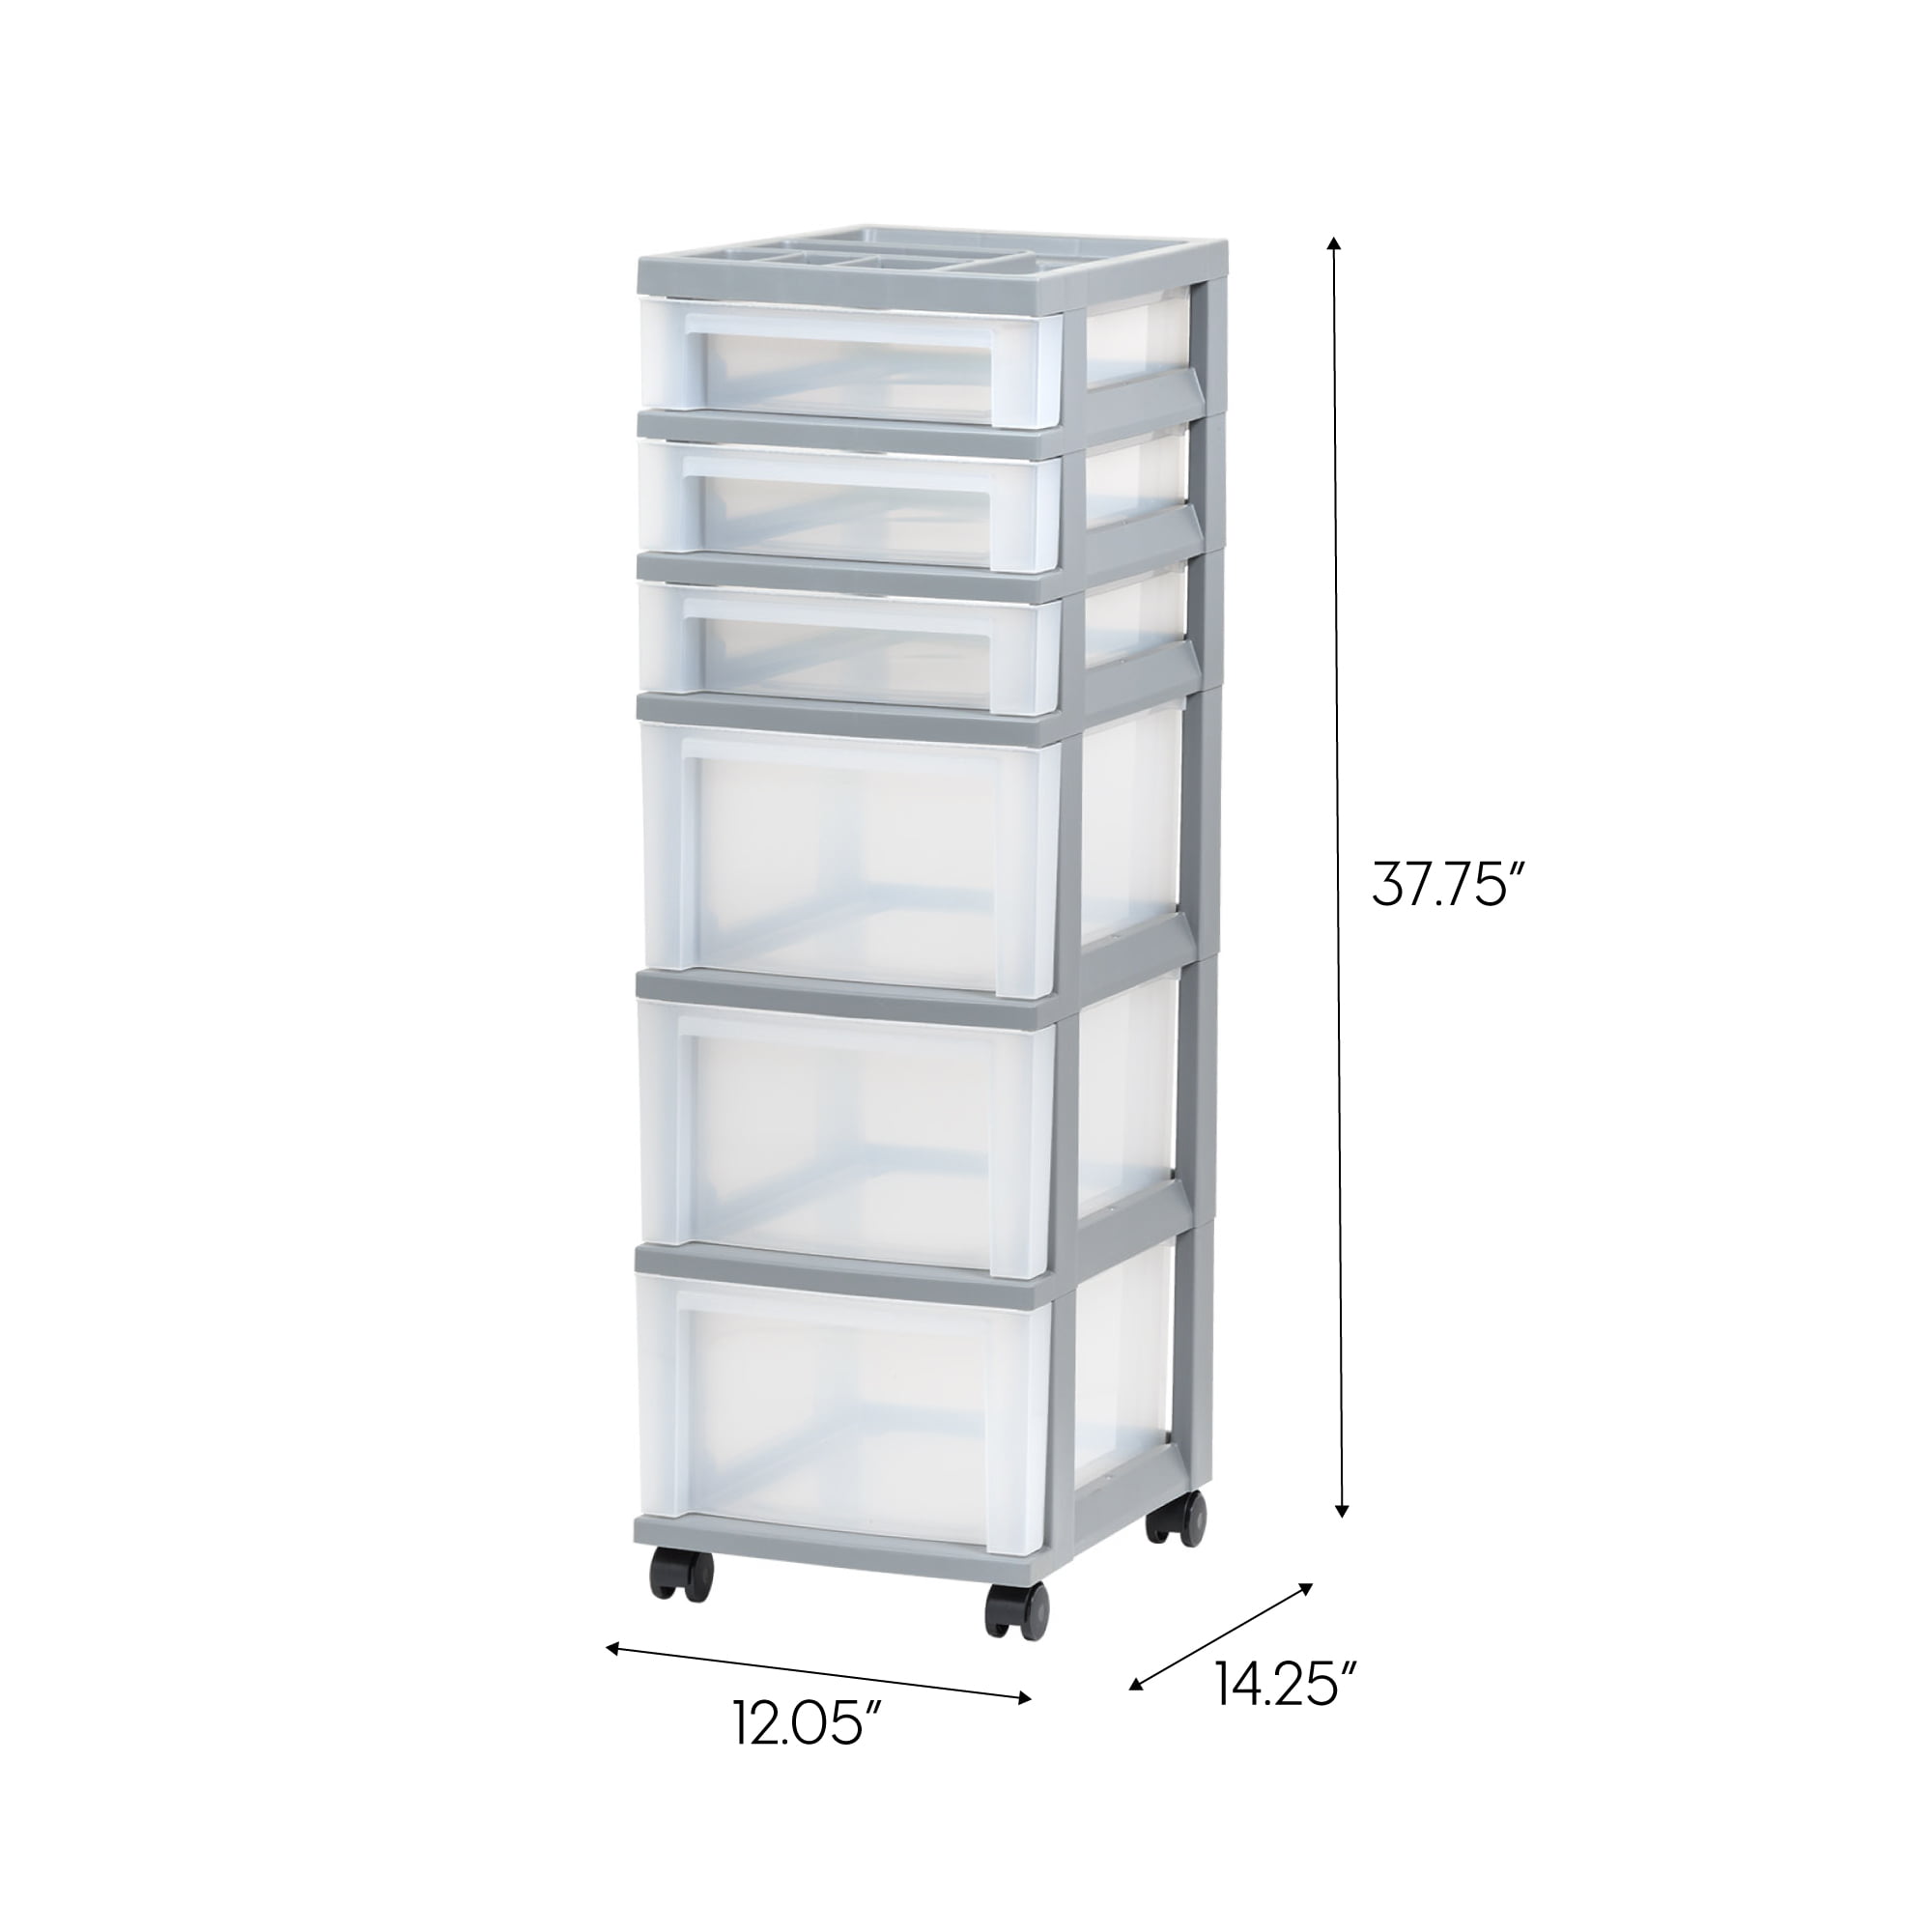 Storage Drawer Cart with Organizer Top - 7 Drawer